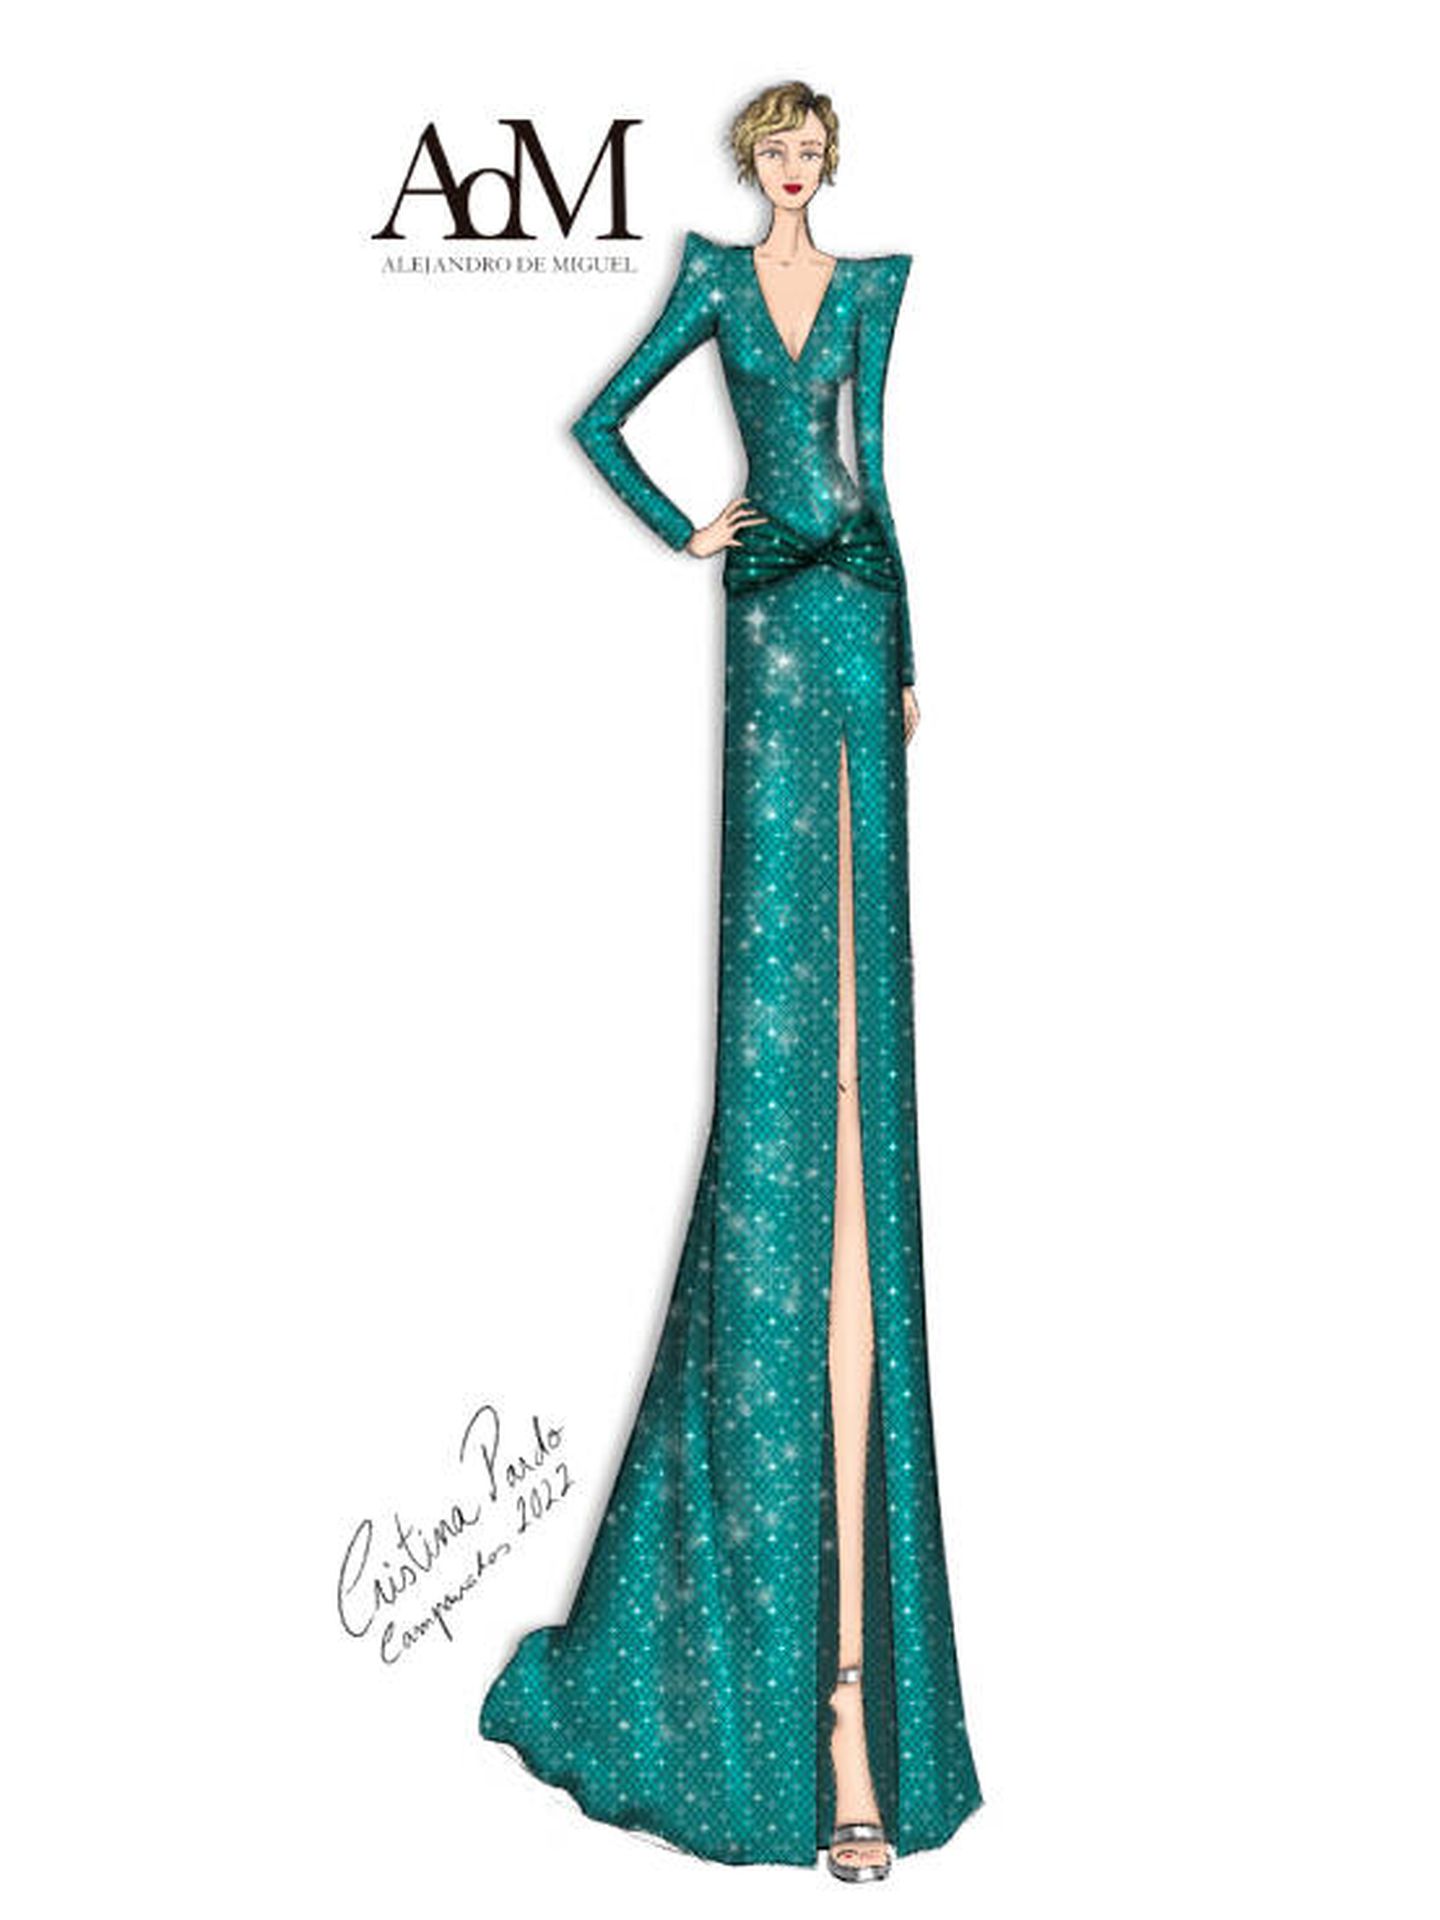 Boceto del vestido de Cristina Pardo para las campanadas 2022. (Cortesía)